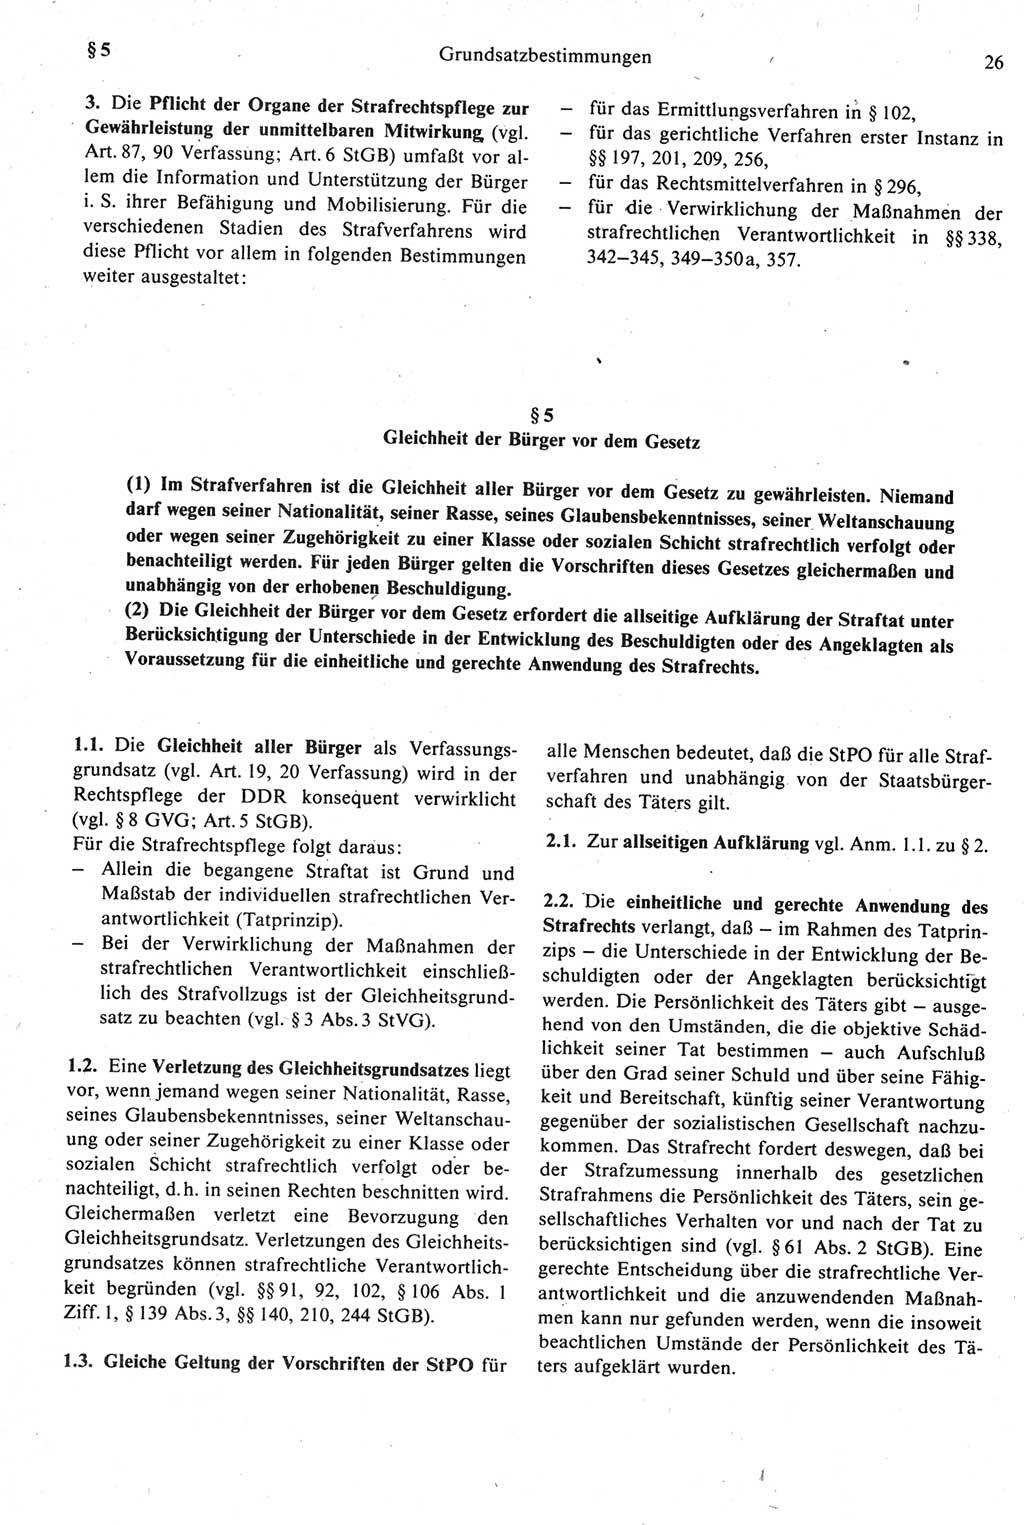 Strafprozeßrecht der DDR [Deutsche Demokratische Republik], Kommentar zur Strafprozeßordnung (StPO) 1987, Seite 26 (Strafprozeßr. DDR Komm. StPO 1987, S. 26)